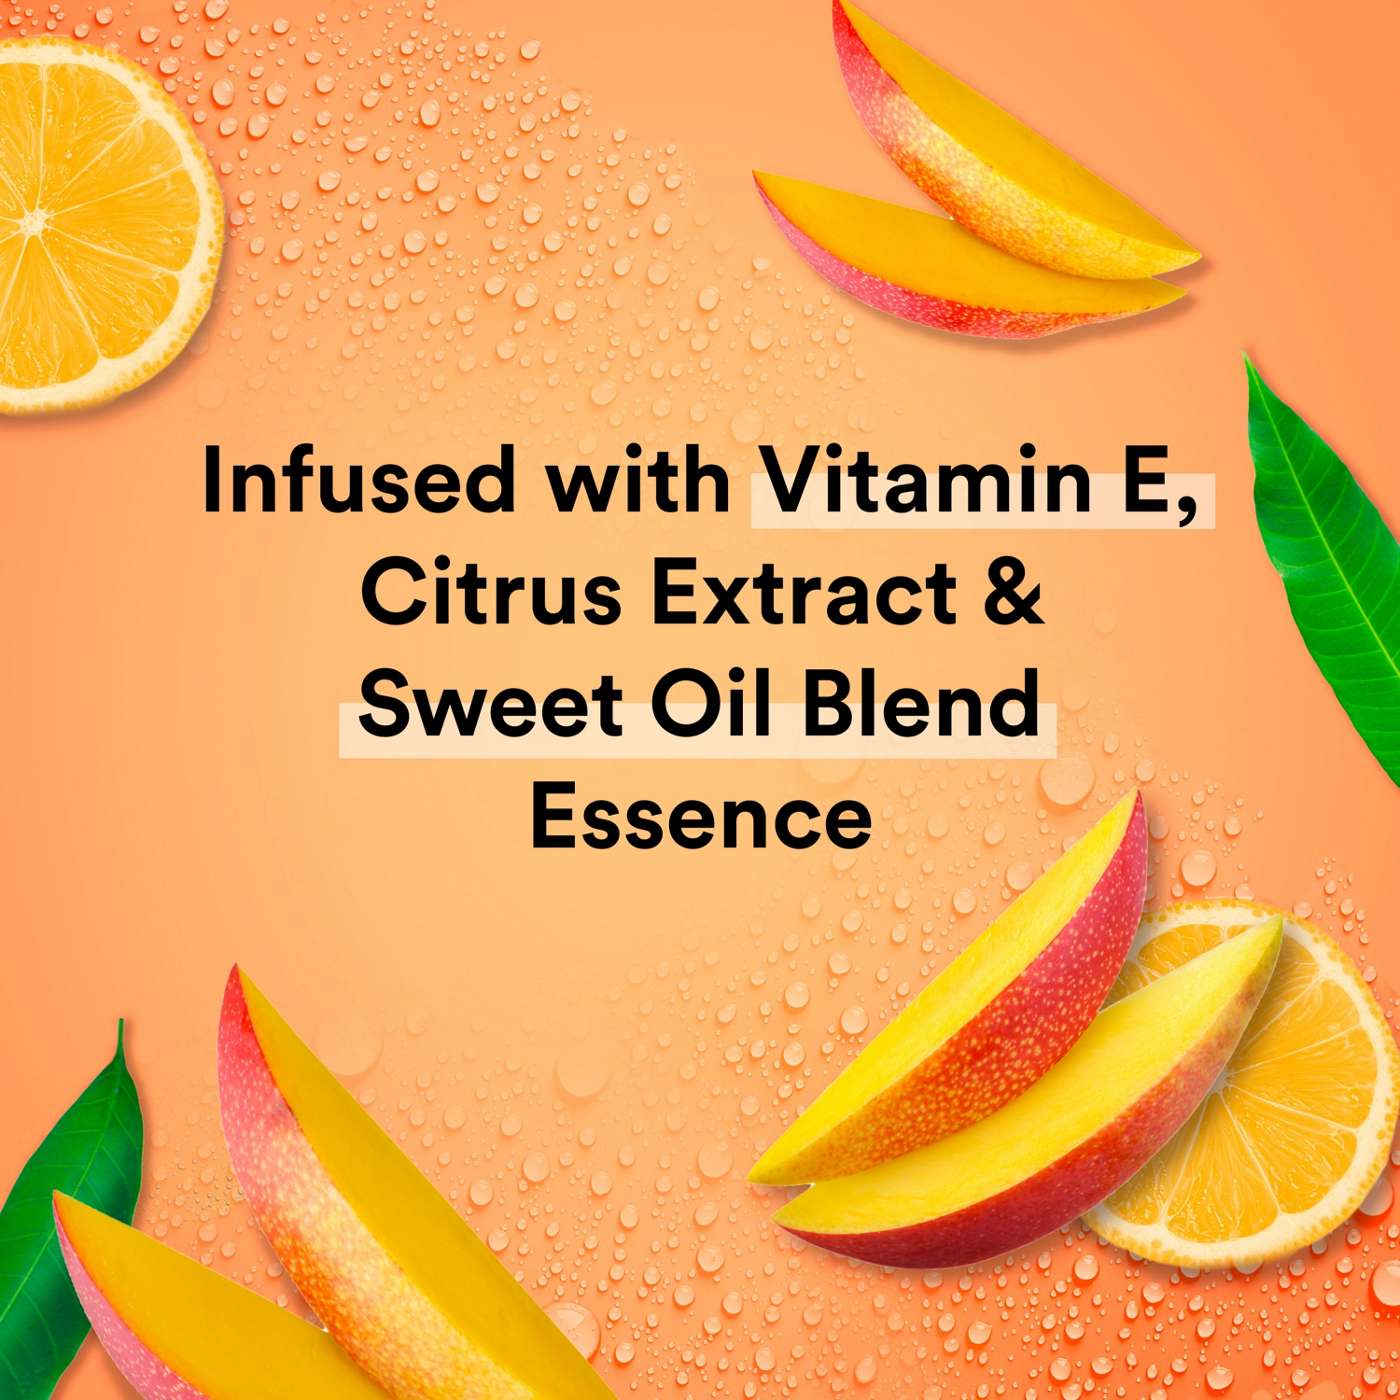 Suave Essentials Gentle Body Wash - Mango & Citrus; image 4 of 7